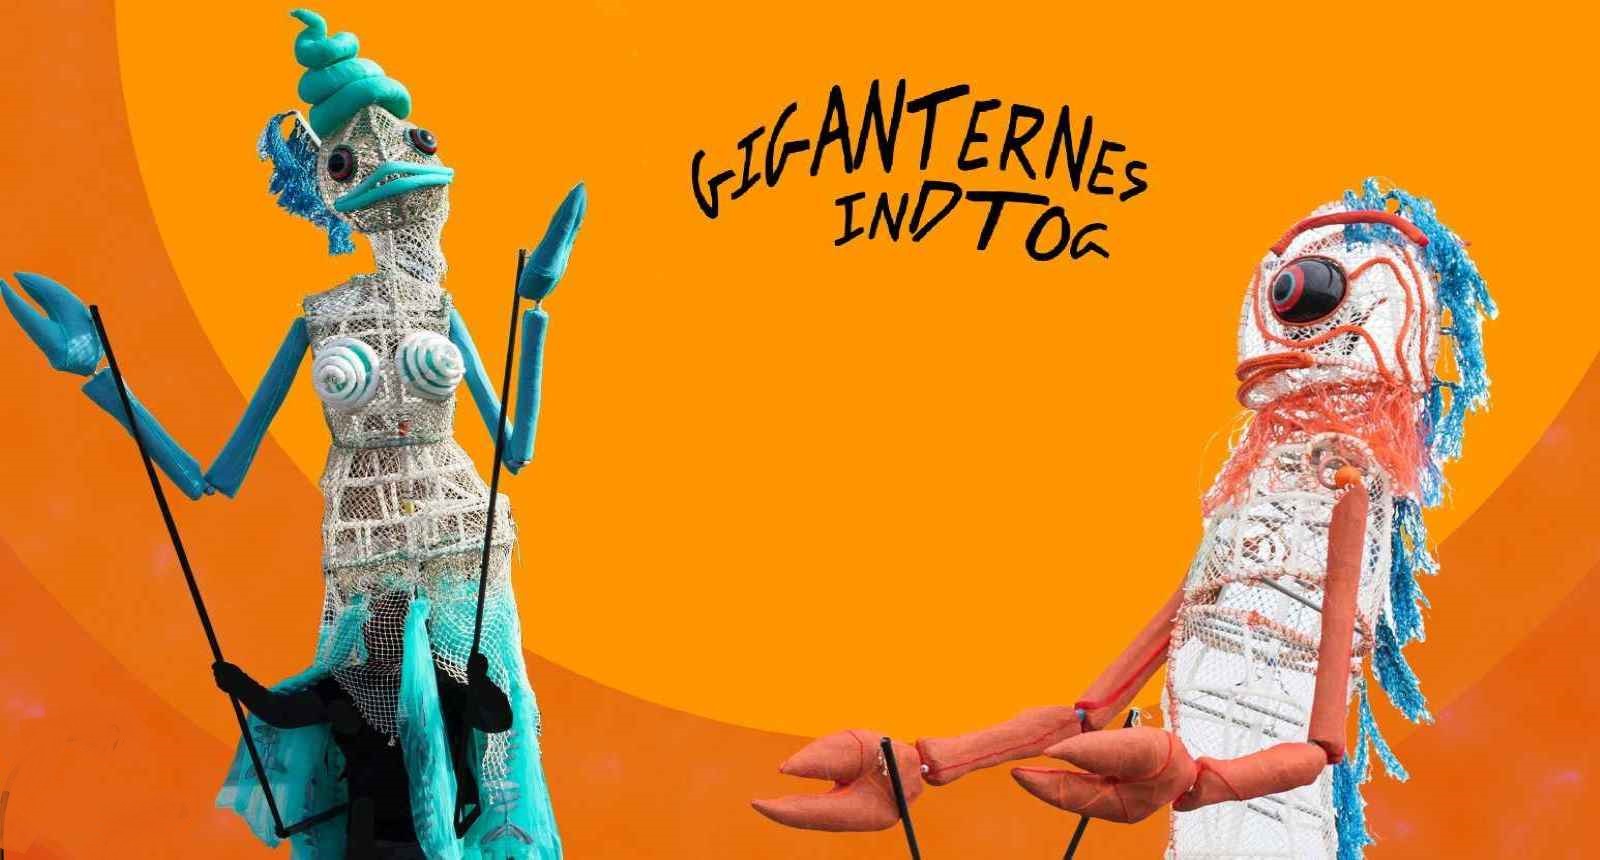 Kom-og-vær-med-dag  Giganternes Indtog   -  Damtoften Ringkøbing